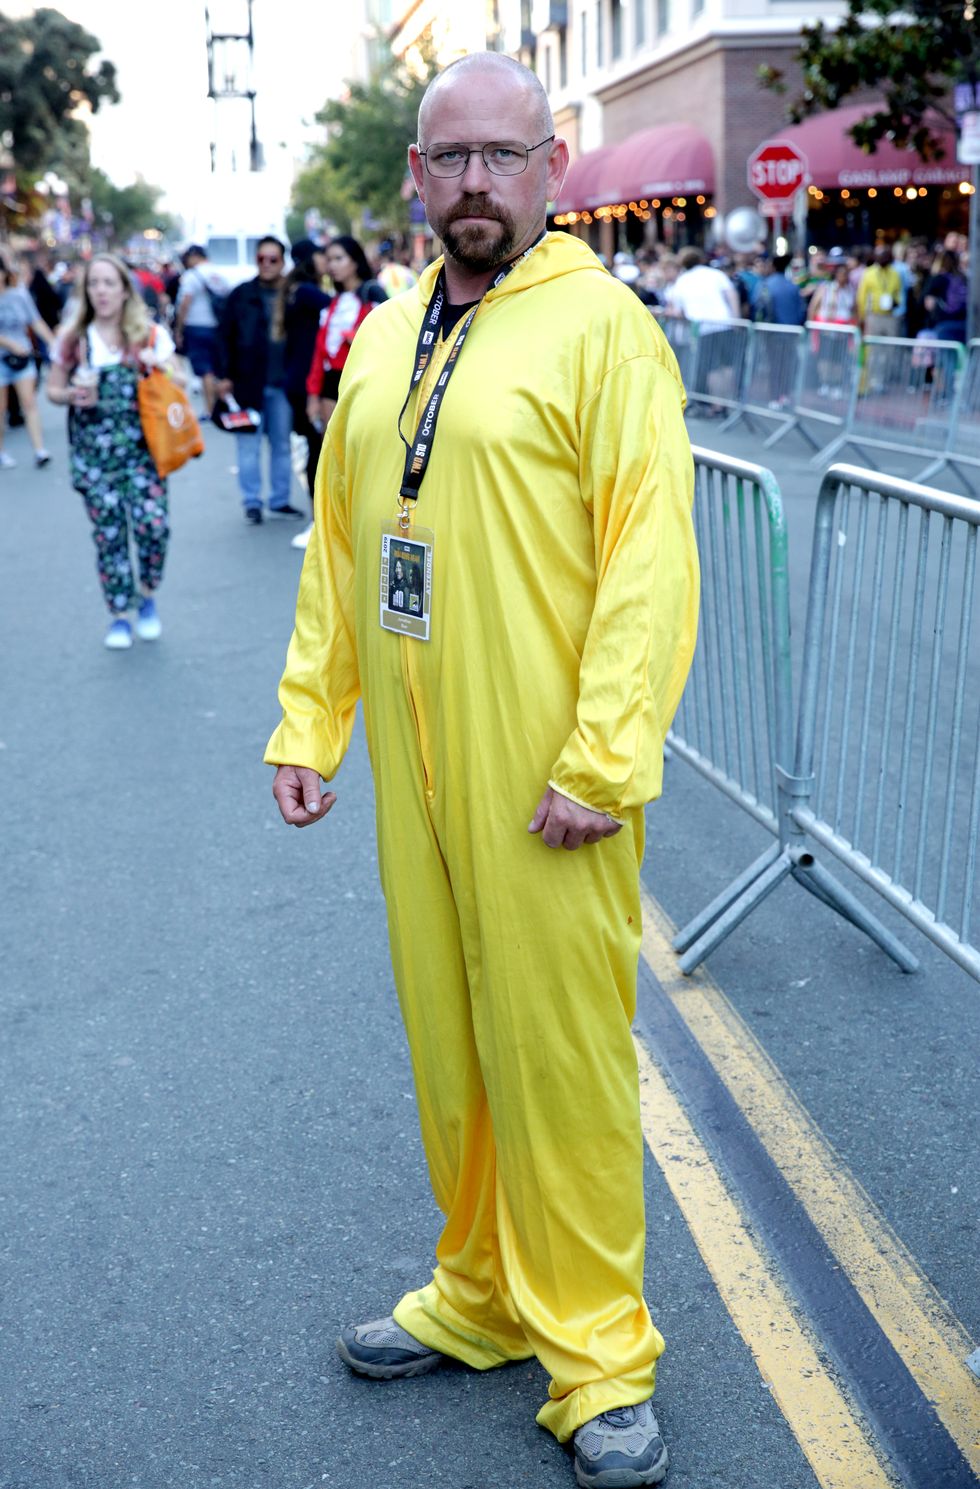 Men's Minion Bob Costume - Extra Large